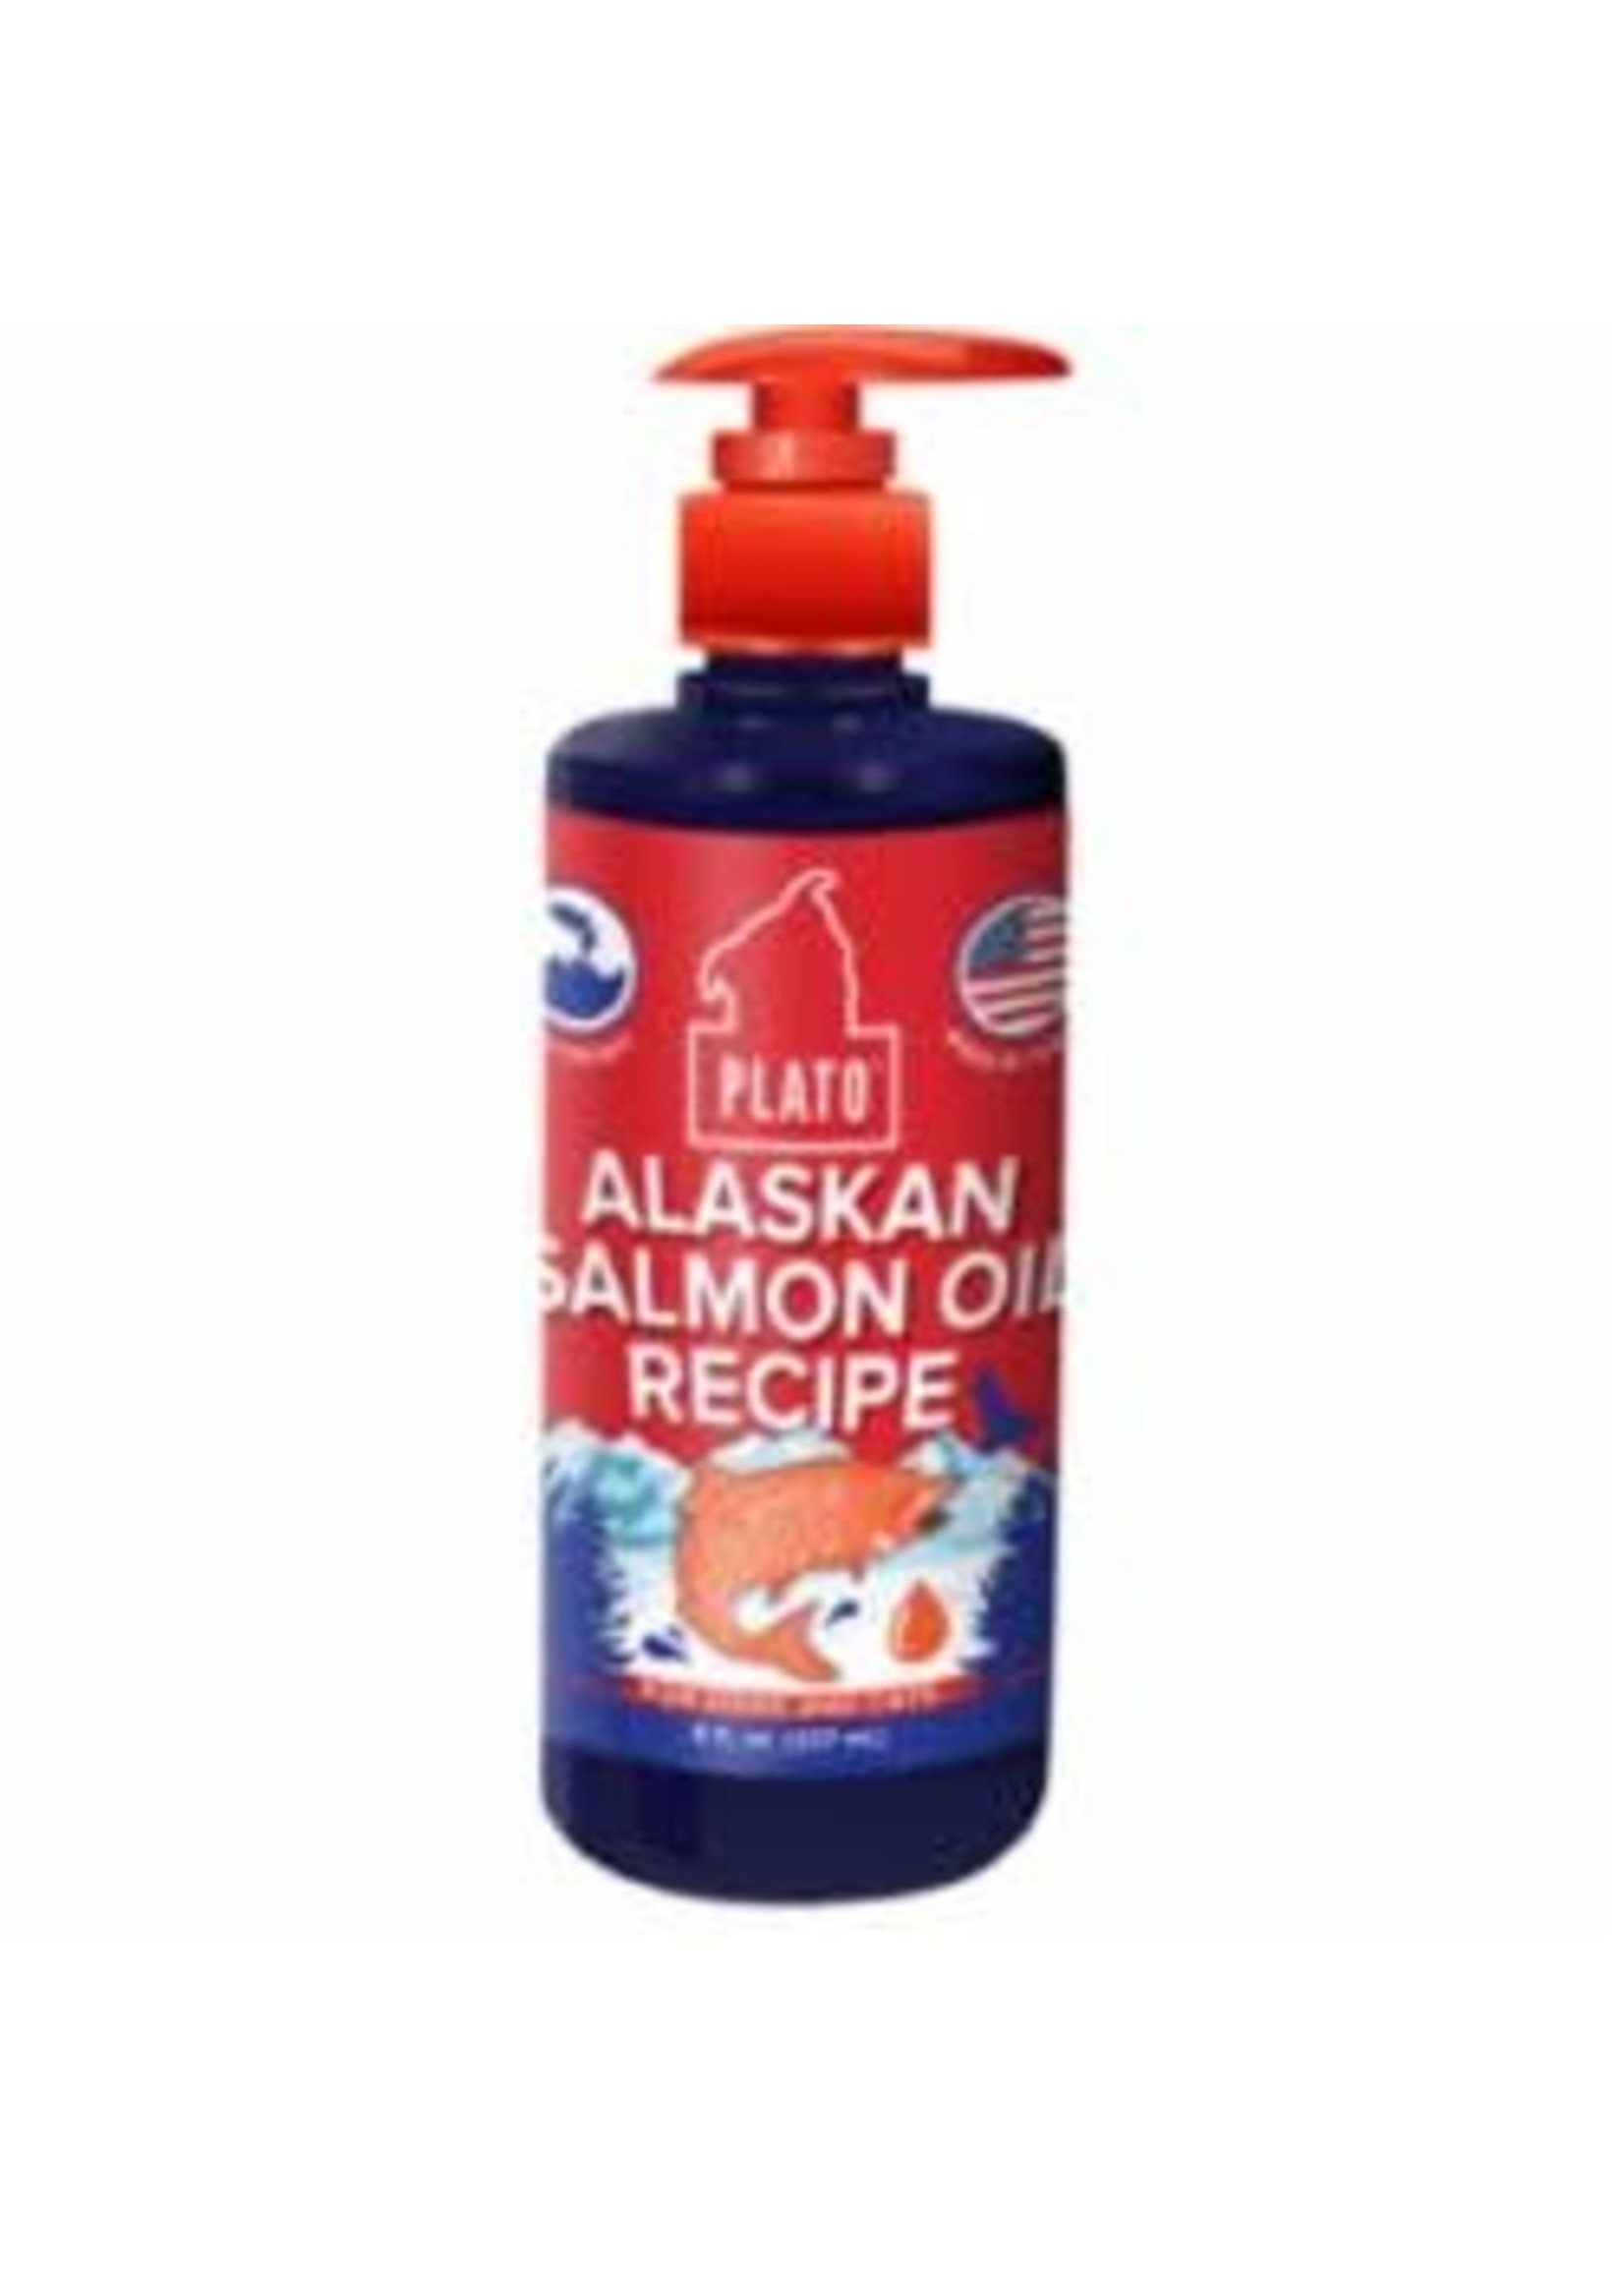 Plato Dog Treats Plato Wild Alaskan Salmon Oil 8OZ